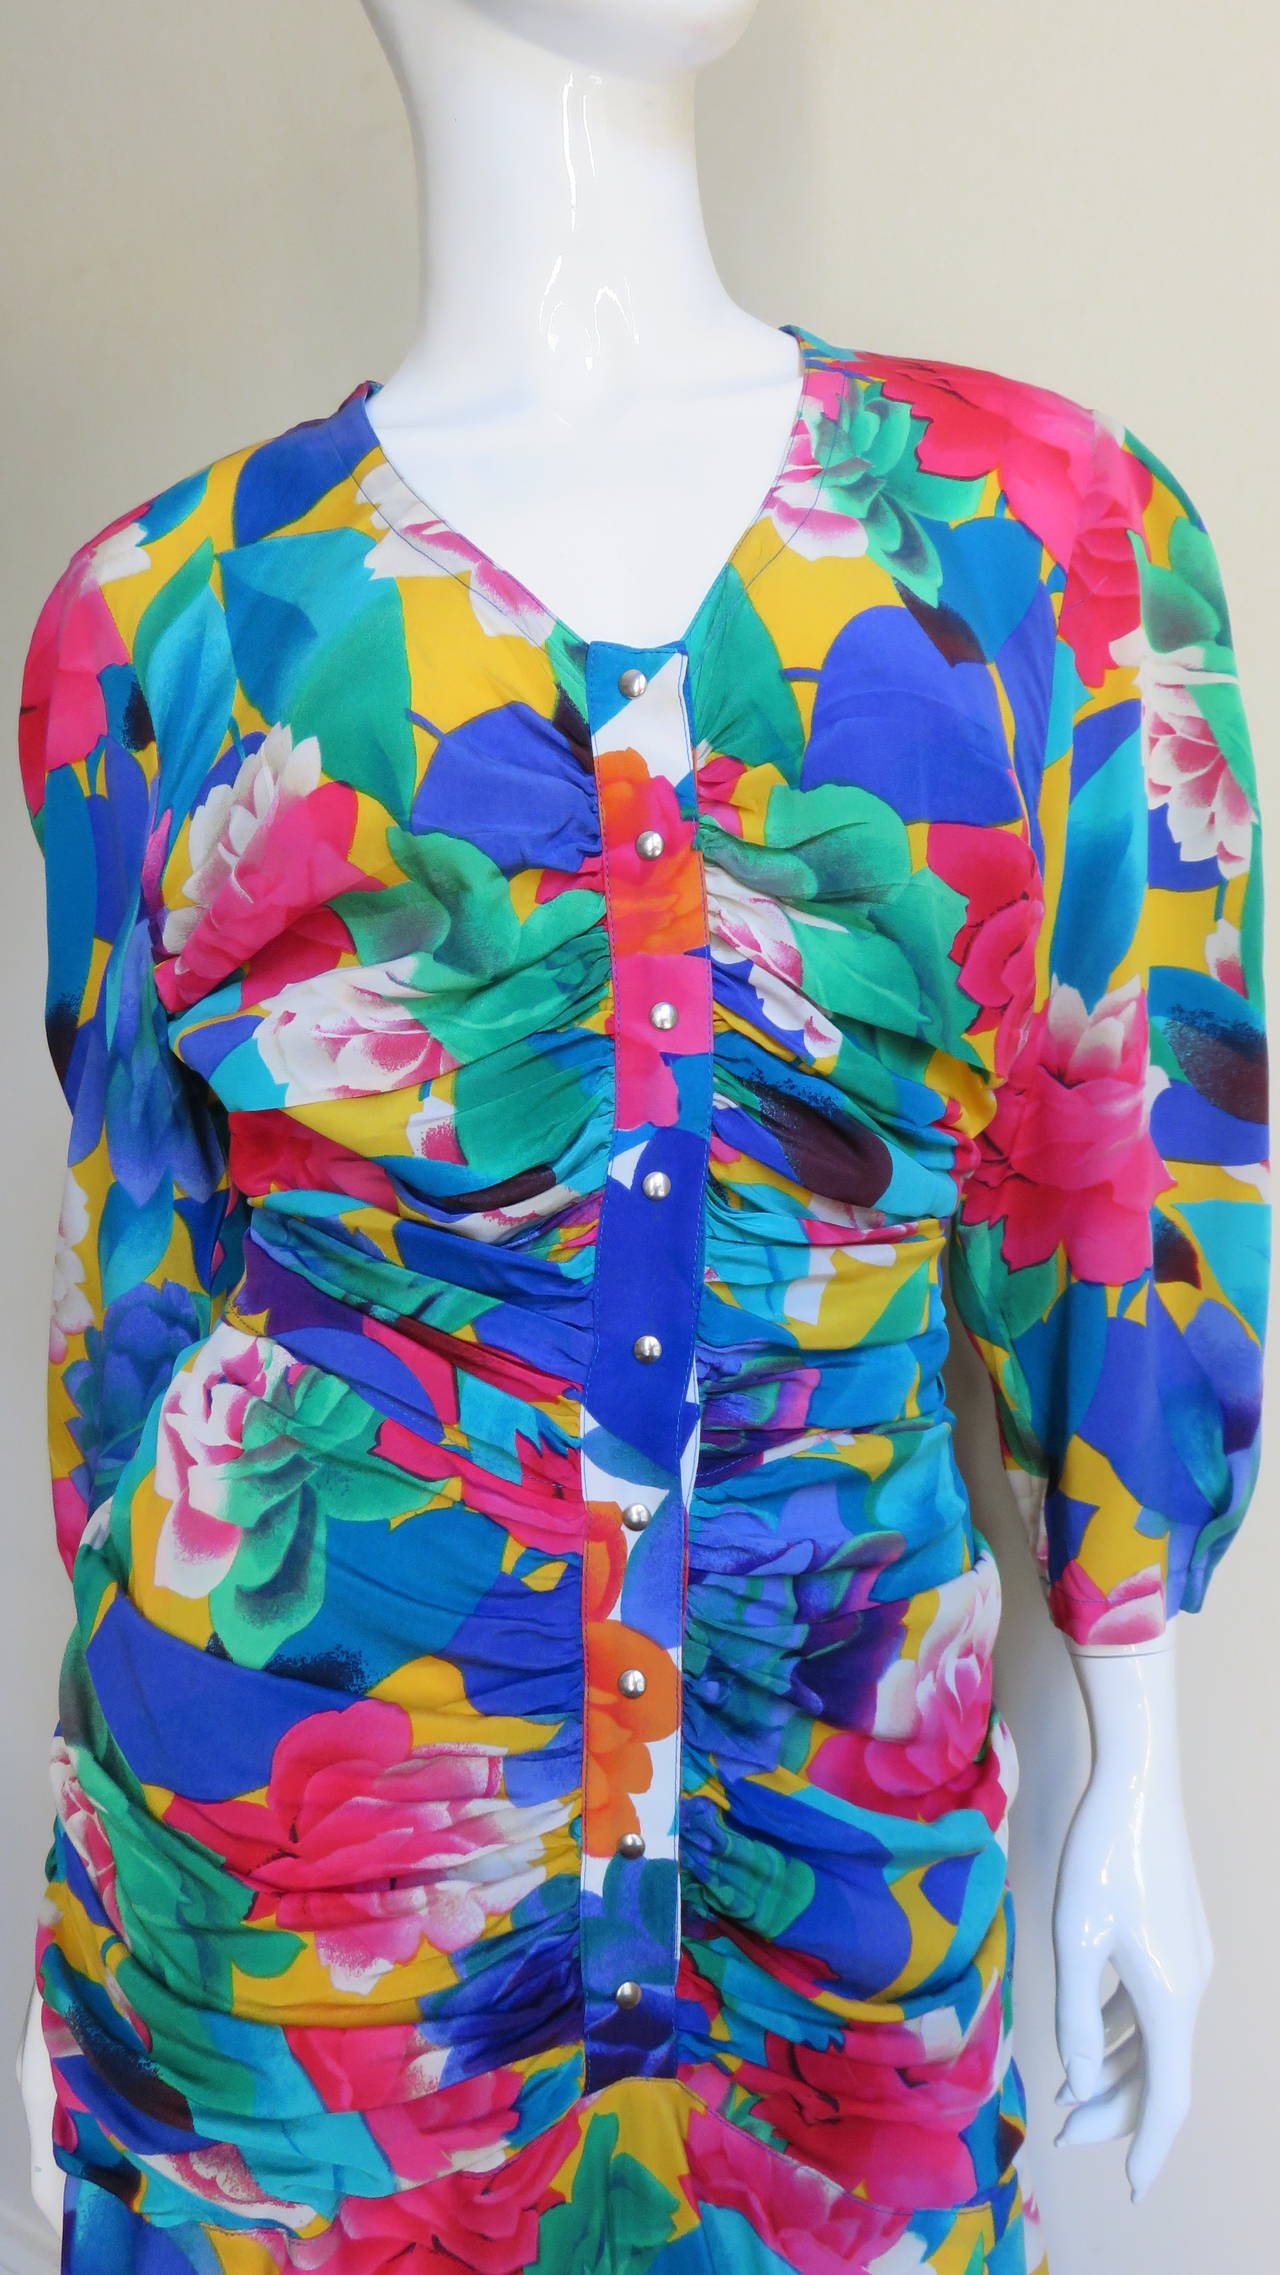 Une robe en soie aux couleurs vives et aux motifs floraux de Thierry Mugler, dans des tons bleus, verts, roses et jaunes.  Elle a un col en V, des manches 3/4 et des boutons-pression au centre du corsage froncé horizontalement.  Elle possède une